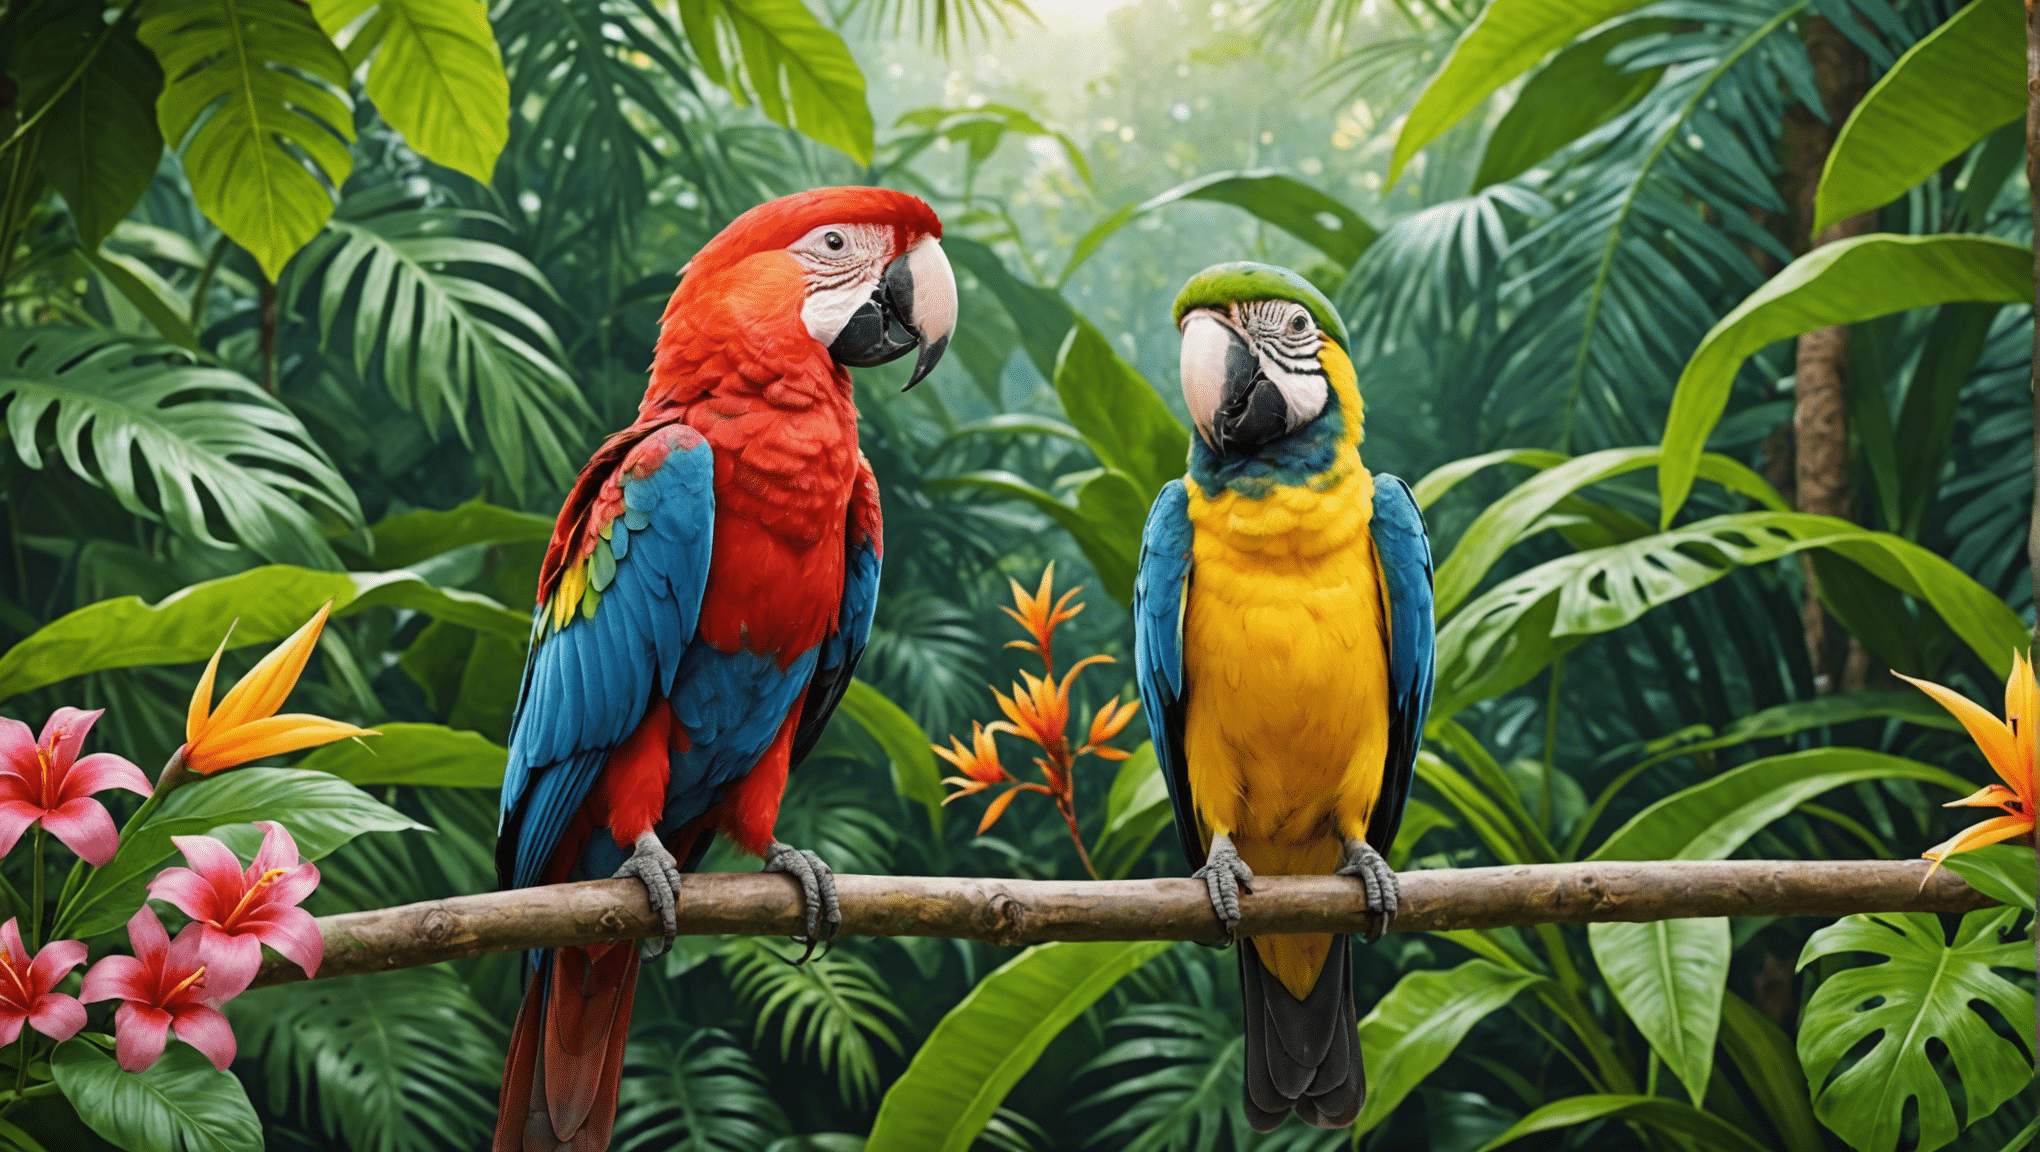 verken de betoverende wereld van tropische vogels met onze fascinerende verzameling artikelen en afbeeldingen.